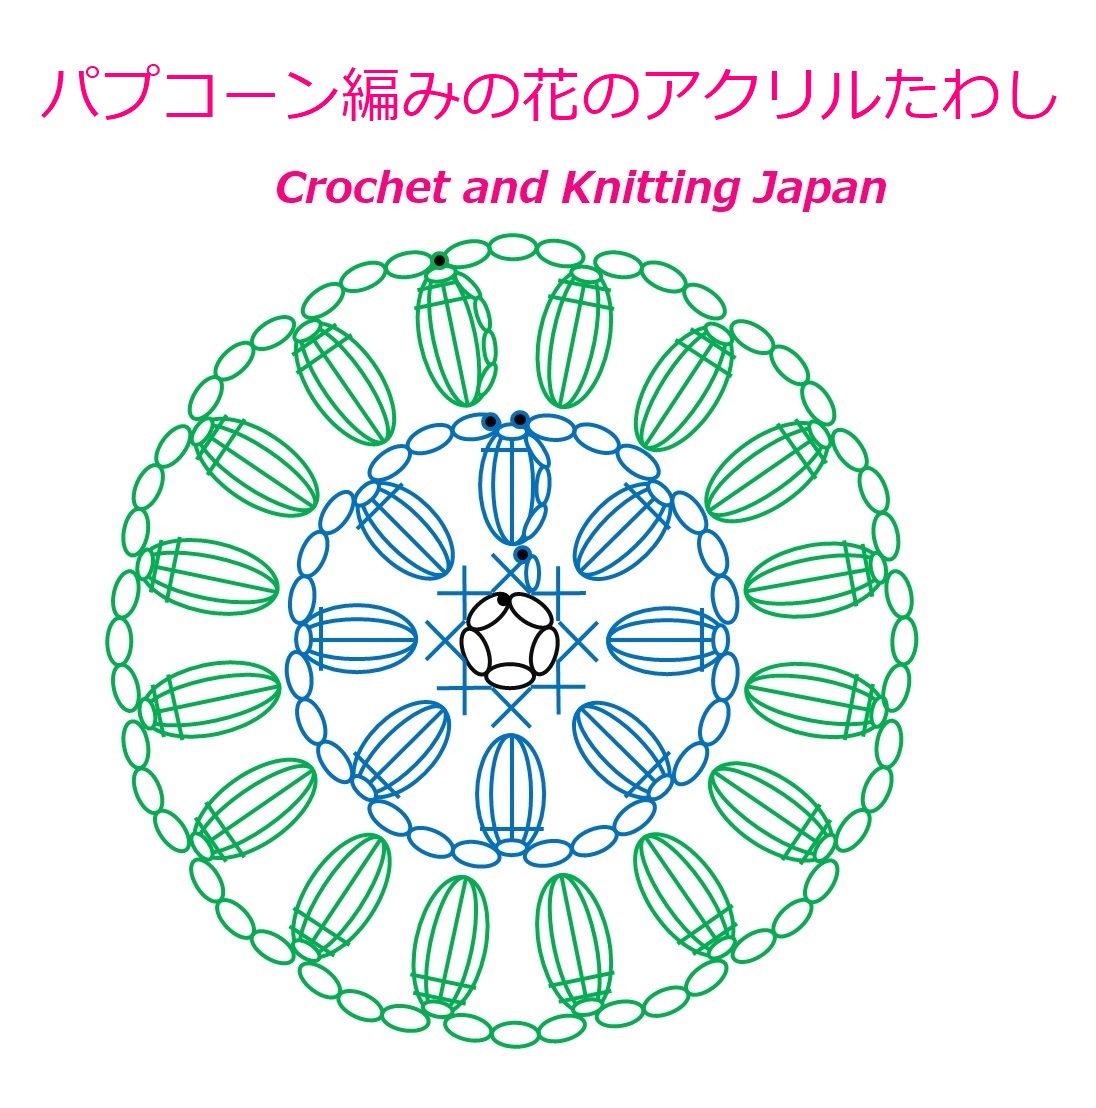 かぎ編み Crochet Japan クロッシェジャパン かぎ針編み パプコーン編みの花のアクリルたわし Popcorn Stitch Flower Twashi 編み図 字幕解説 Crochet And Knitting Japan